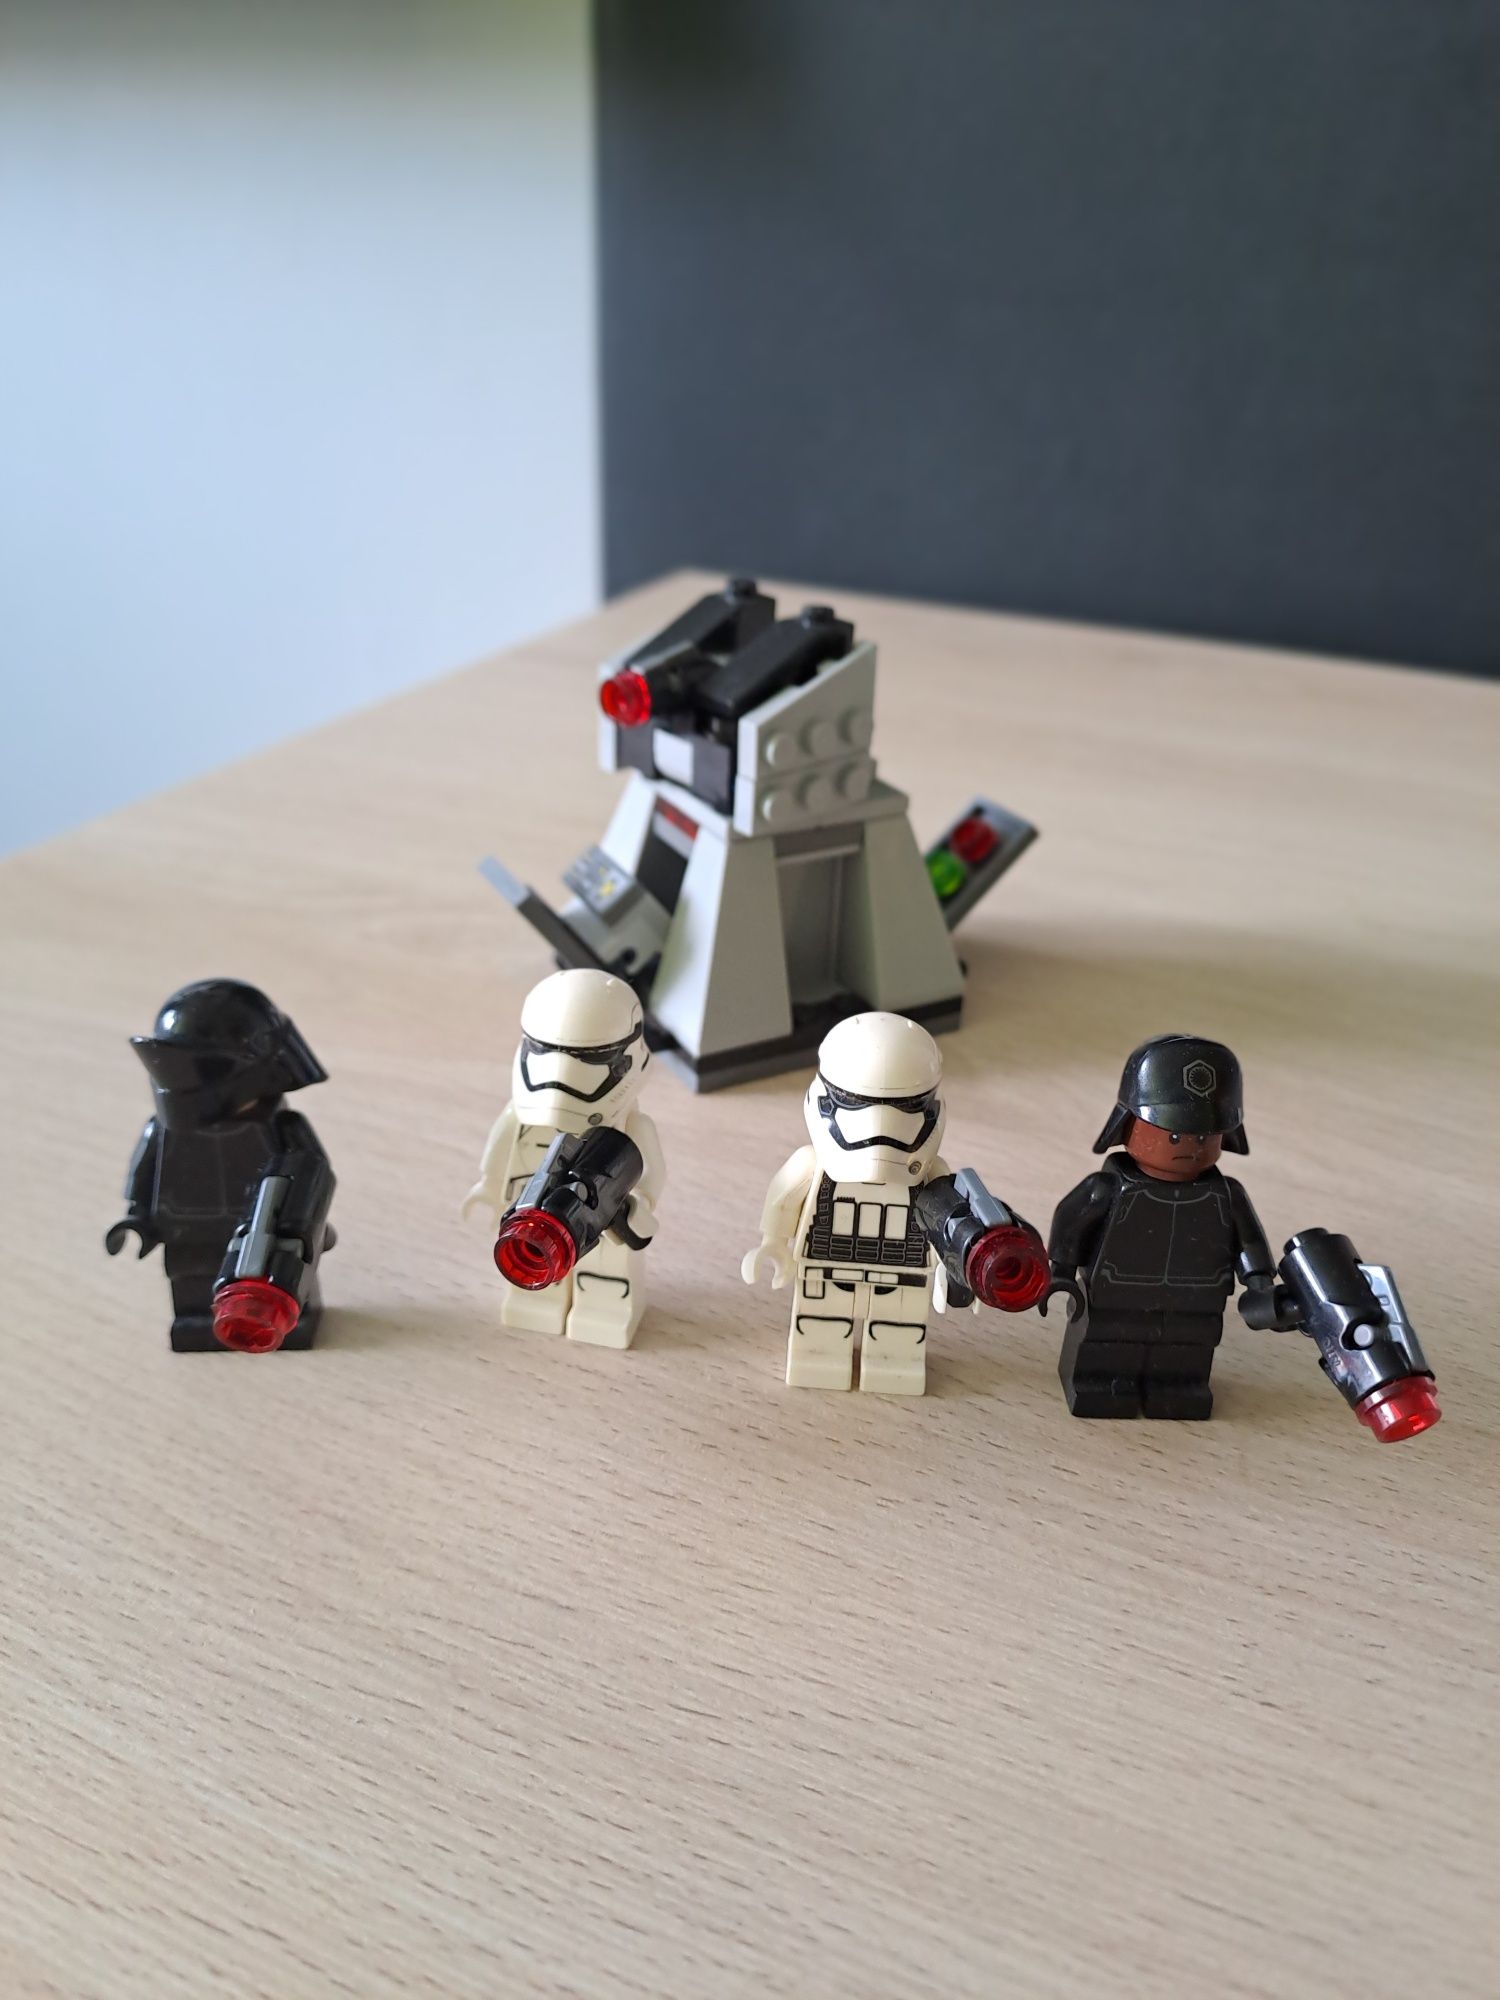 Lego Star Wars 75132